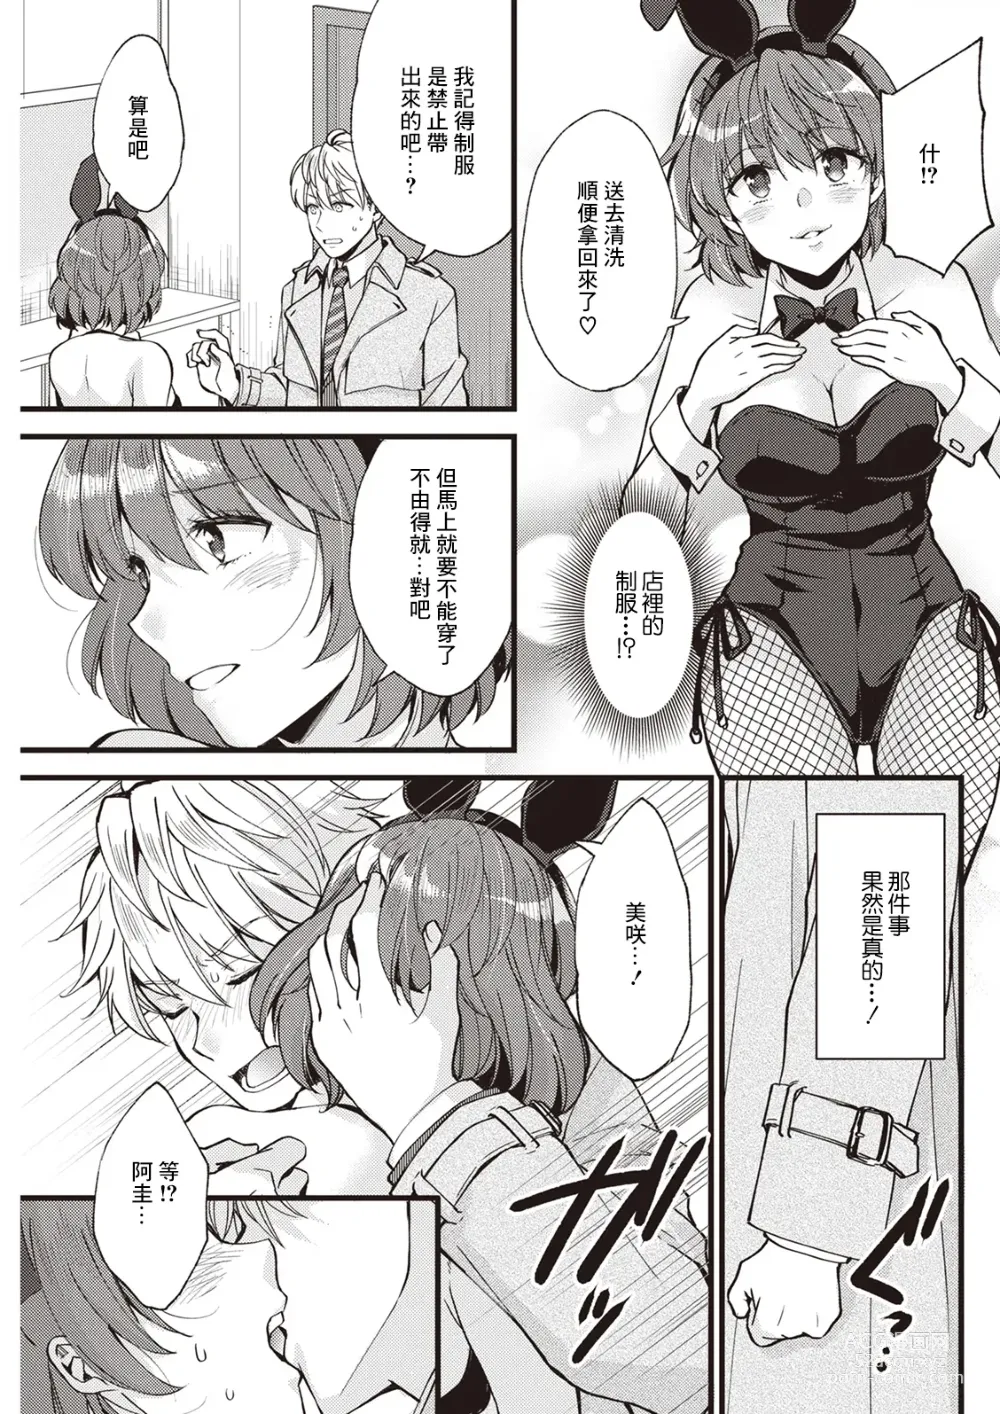 Page 5 of manga Koi wa Just in me